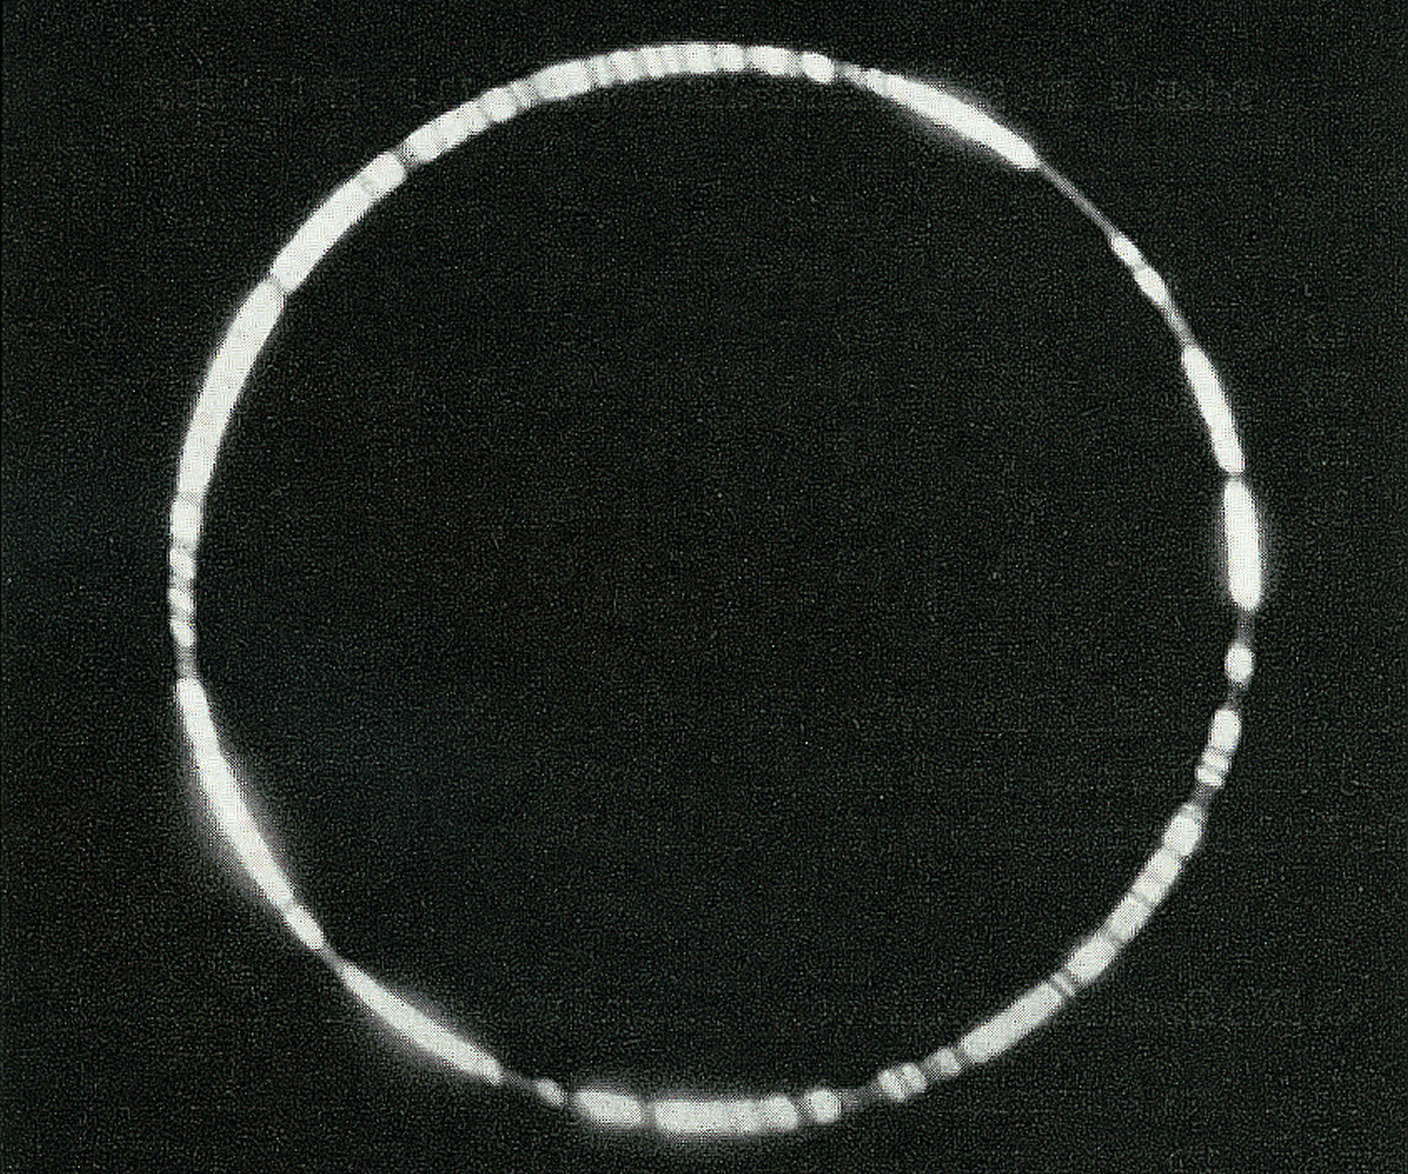 Bild einer totalen Sonnenfinsternis, es ist nur ein schmaler Lichtkranz sichtbar